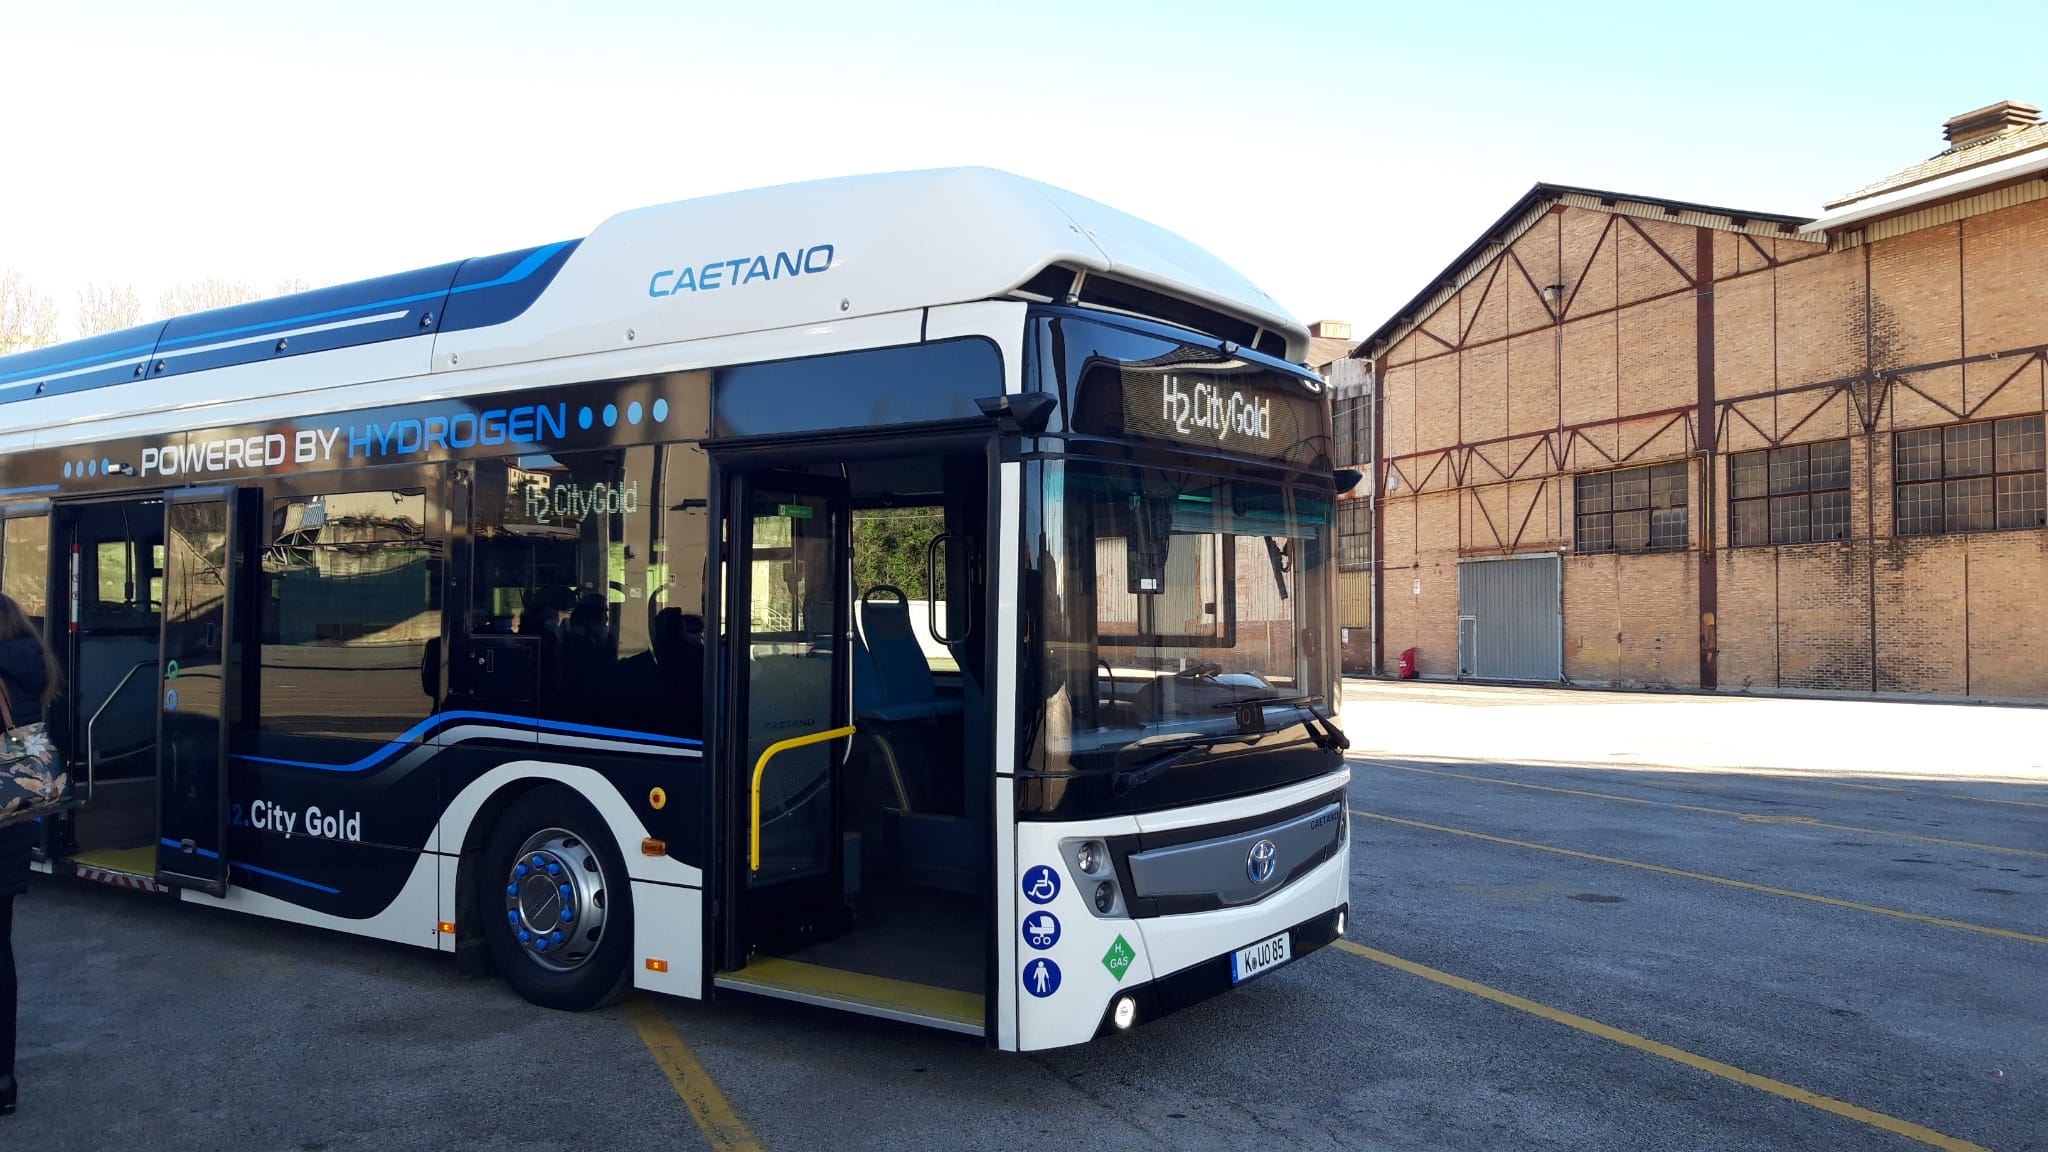 Mobilità sostenibile: parte da Trieste il tour del bus a idrogeno Caetano con la collaborazione di Arriva Italia